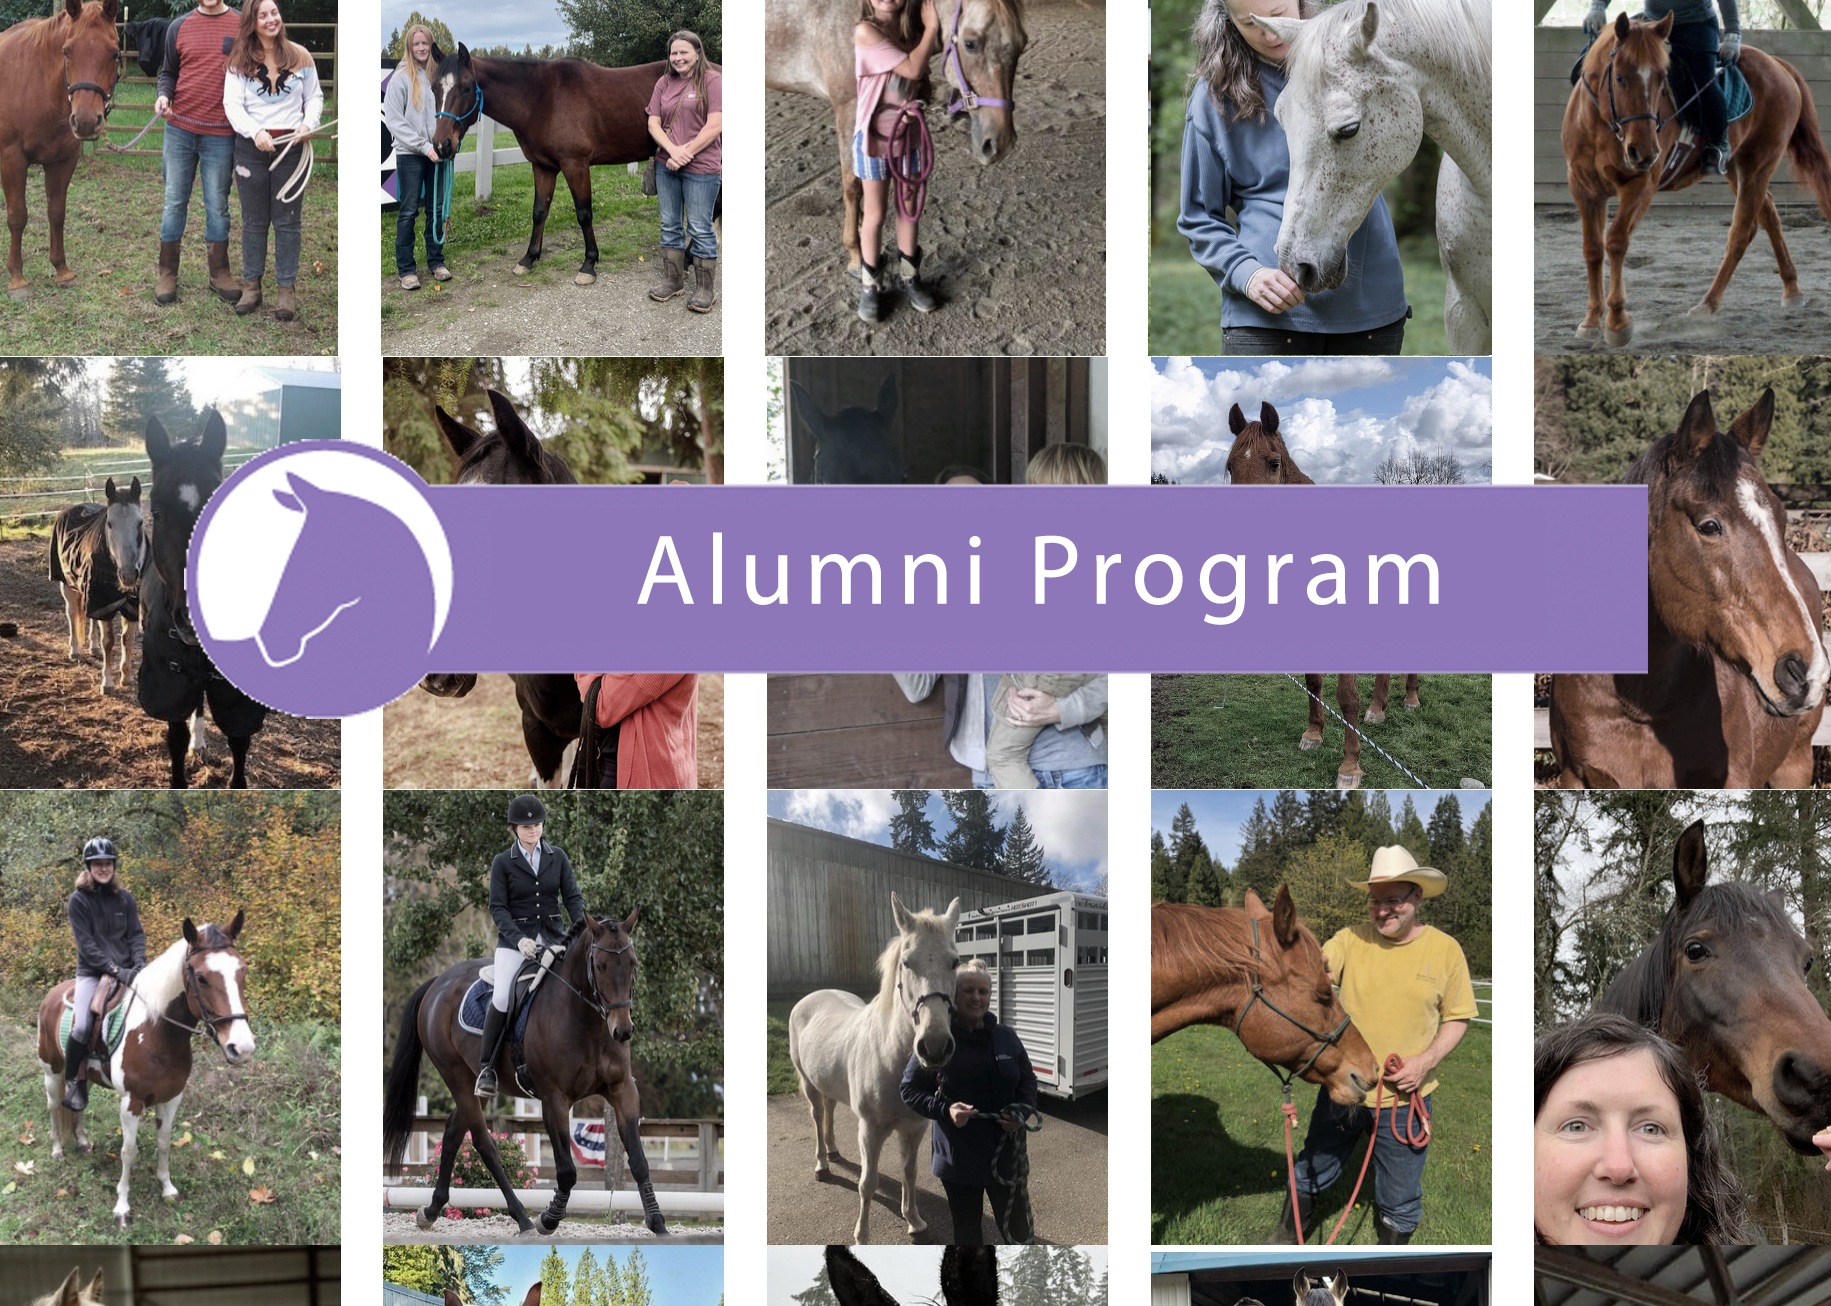 Alumni Program — Q1 Update